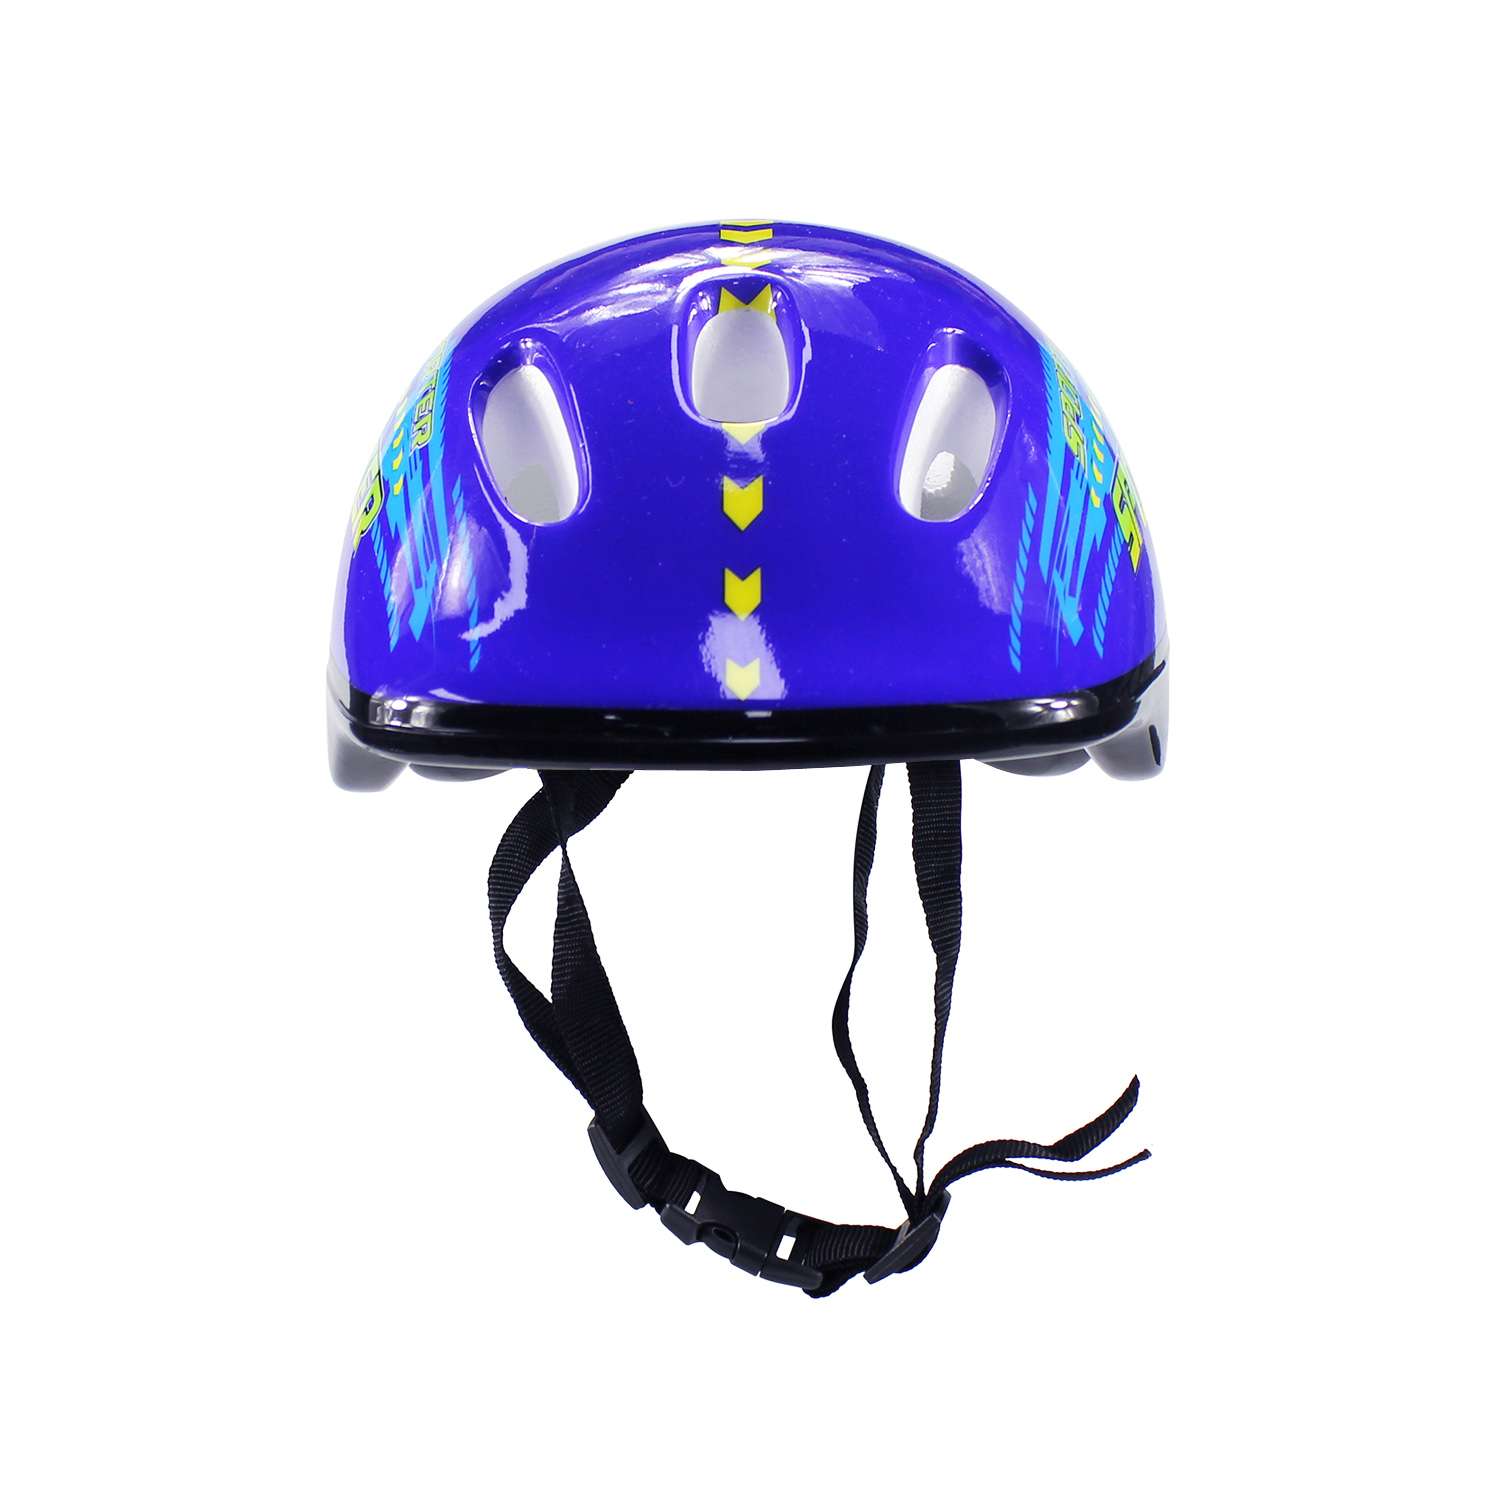 Набор роликовые коньки Alpha Caprice раздвижные Sporter Blue шлем и набор защиты в сумке размер XS 27-30 - фото 4